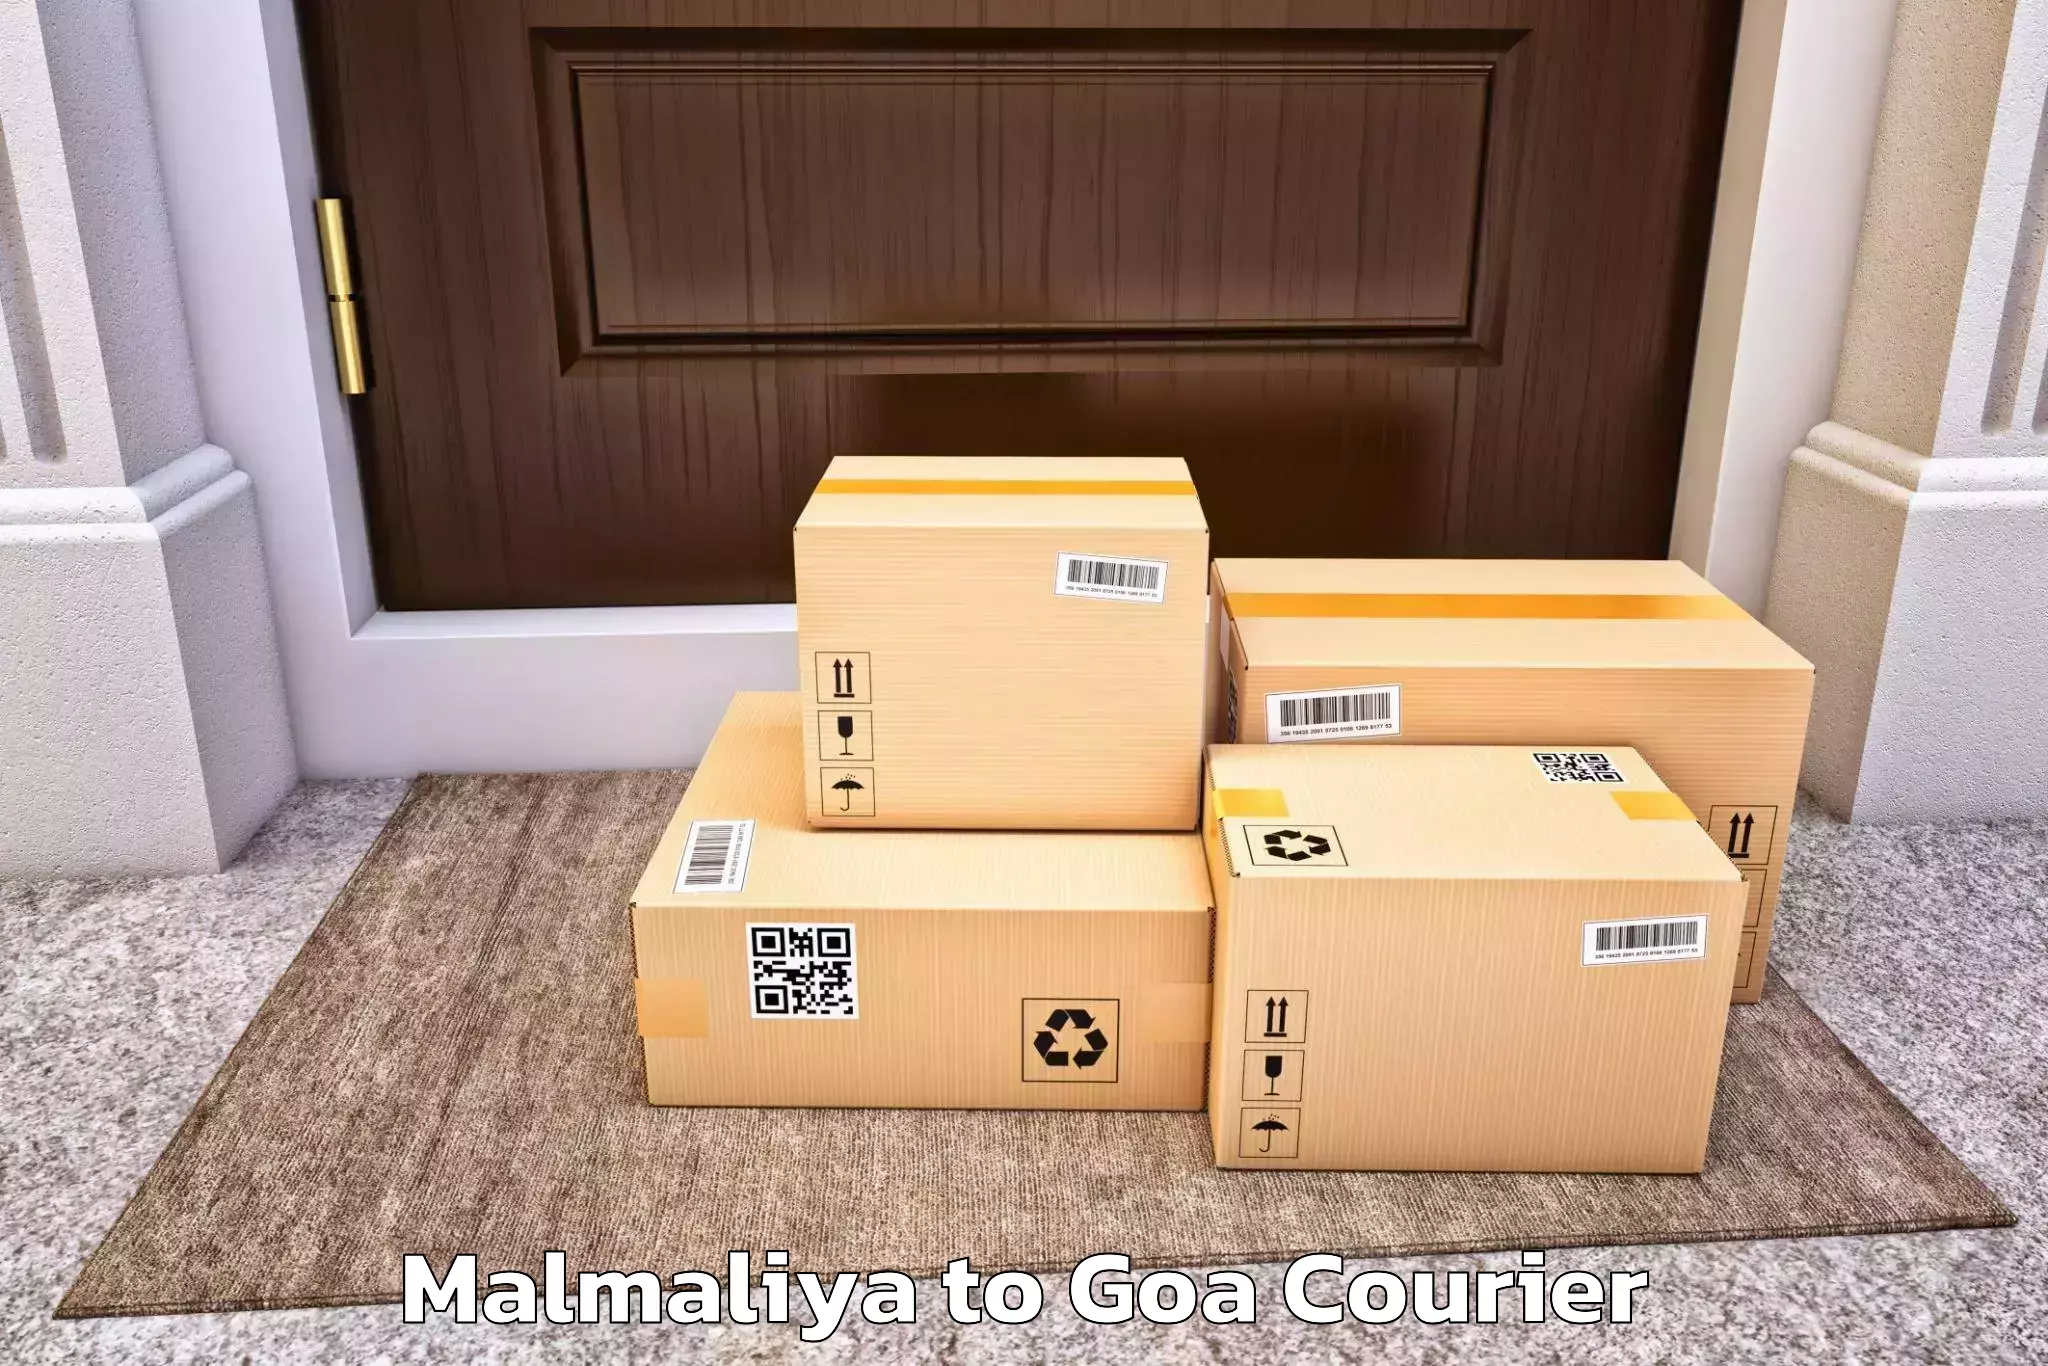 Efficient moving and packing Malmaliya to Goa